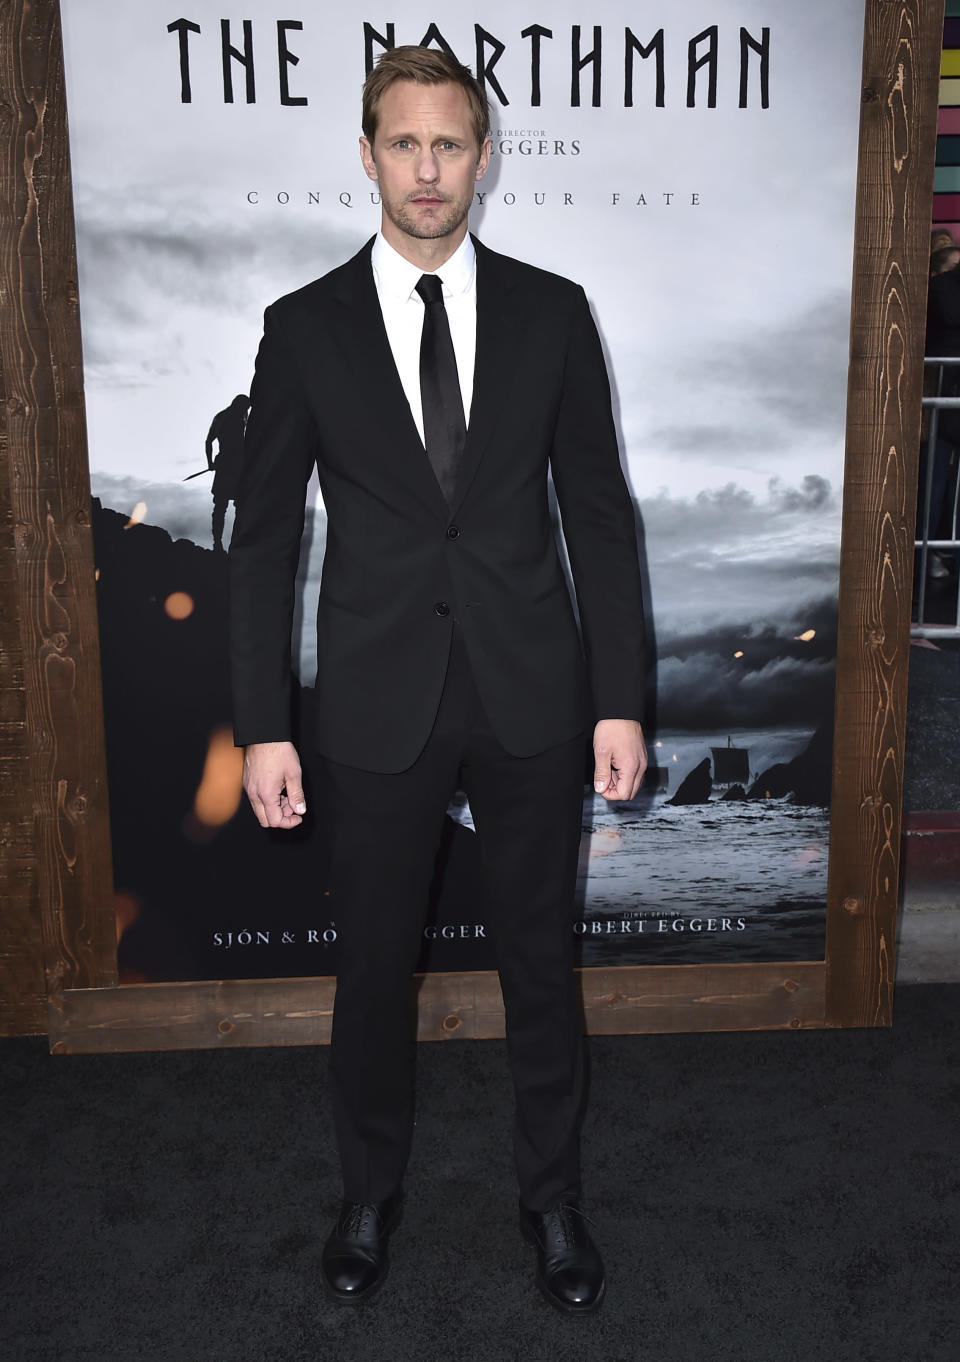 El actor Alexander Skarsgård llega al estreno en Los Angeles de "The Northman" el 18 de abril de 2022 en el Teatro Chino TCL. (Foto Jordan Strauss/Invision/AP)